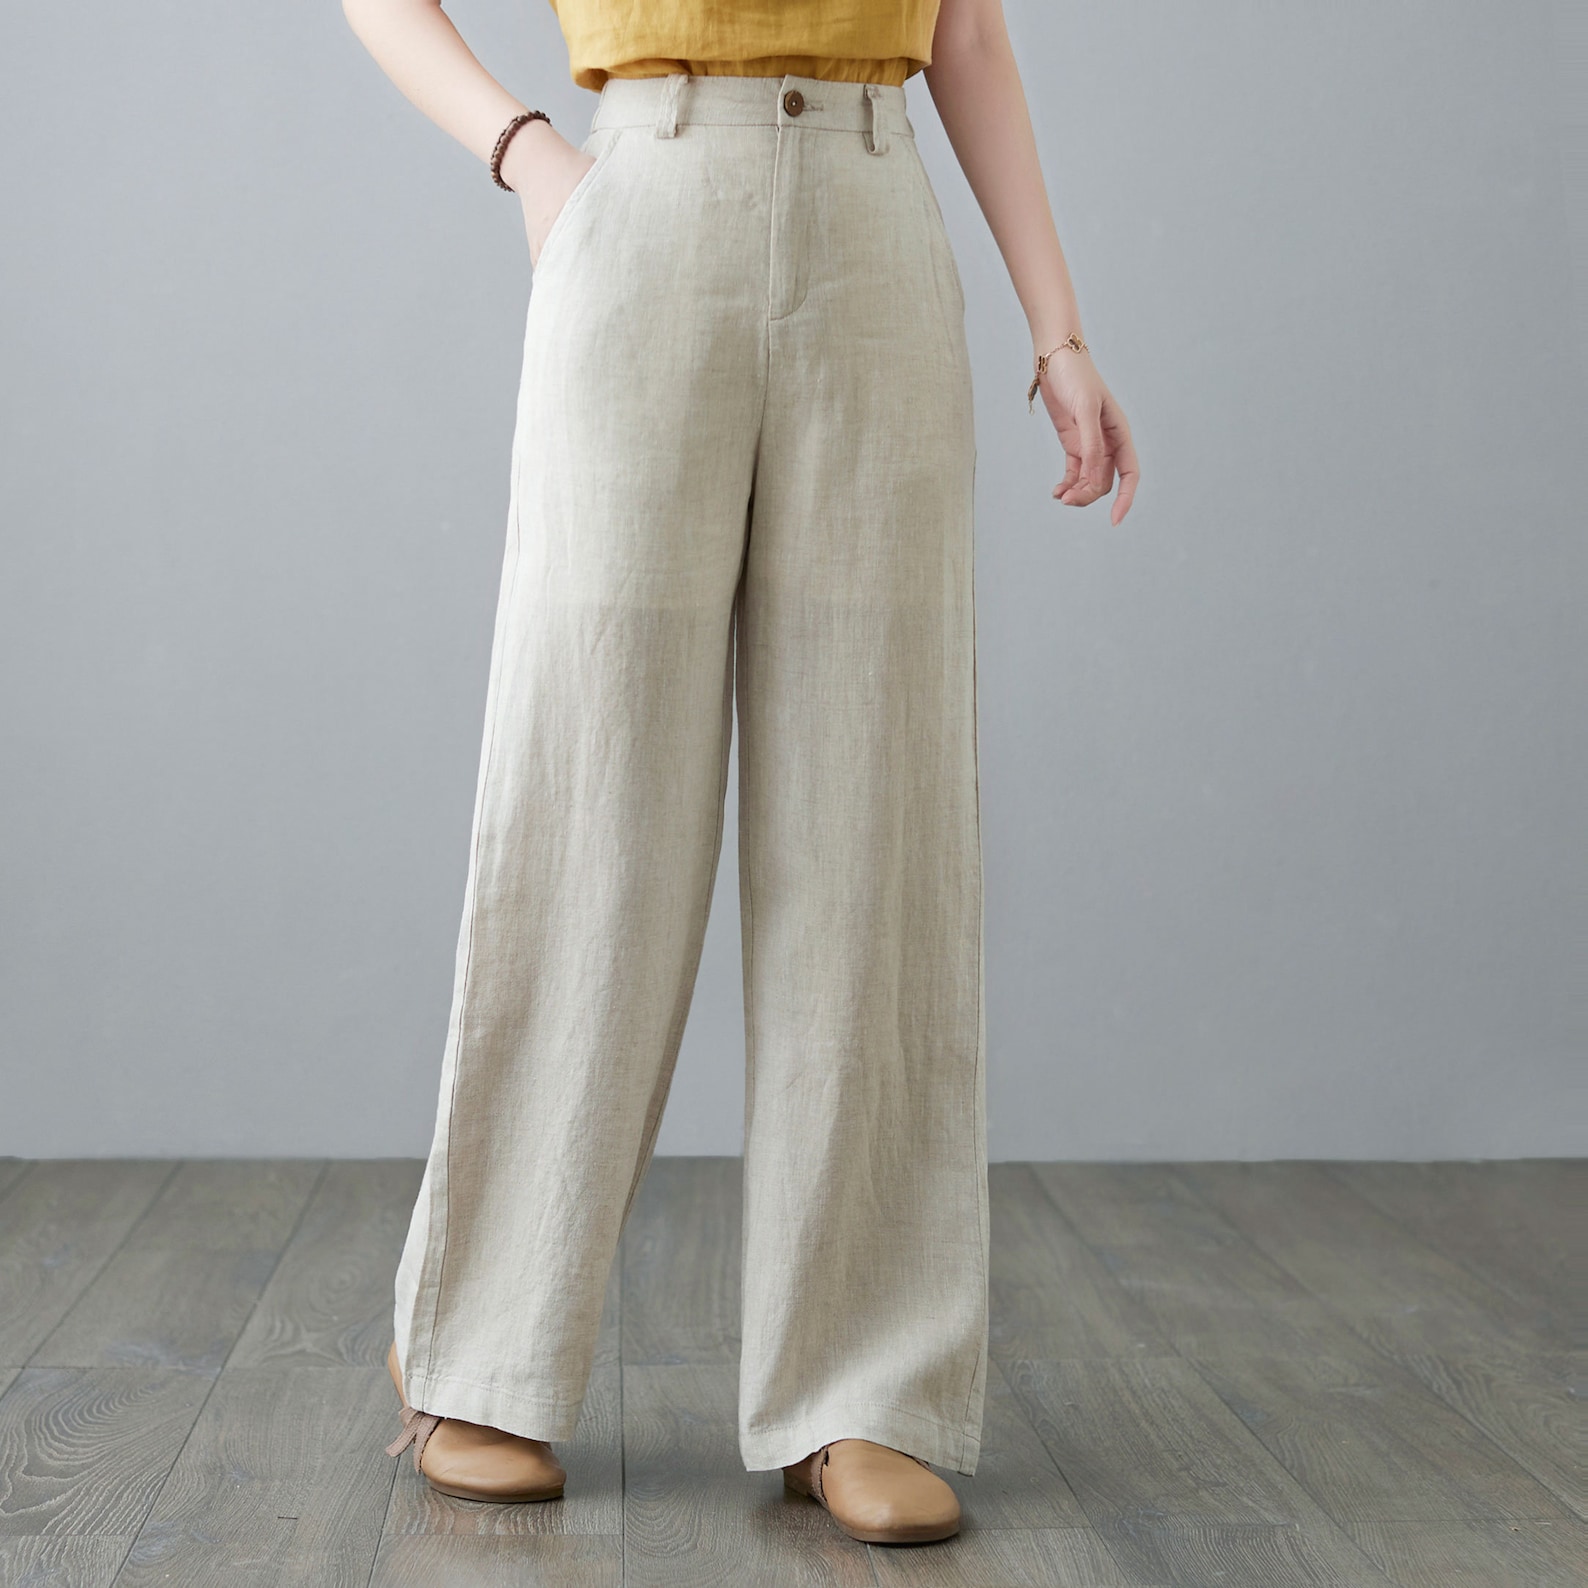 High Waist Linen pants for Women Wide Leg Straight Linen | Etsy